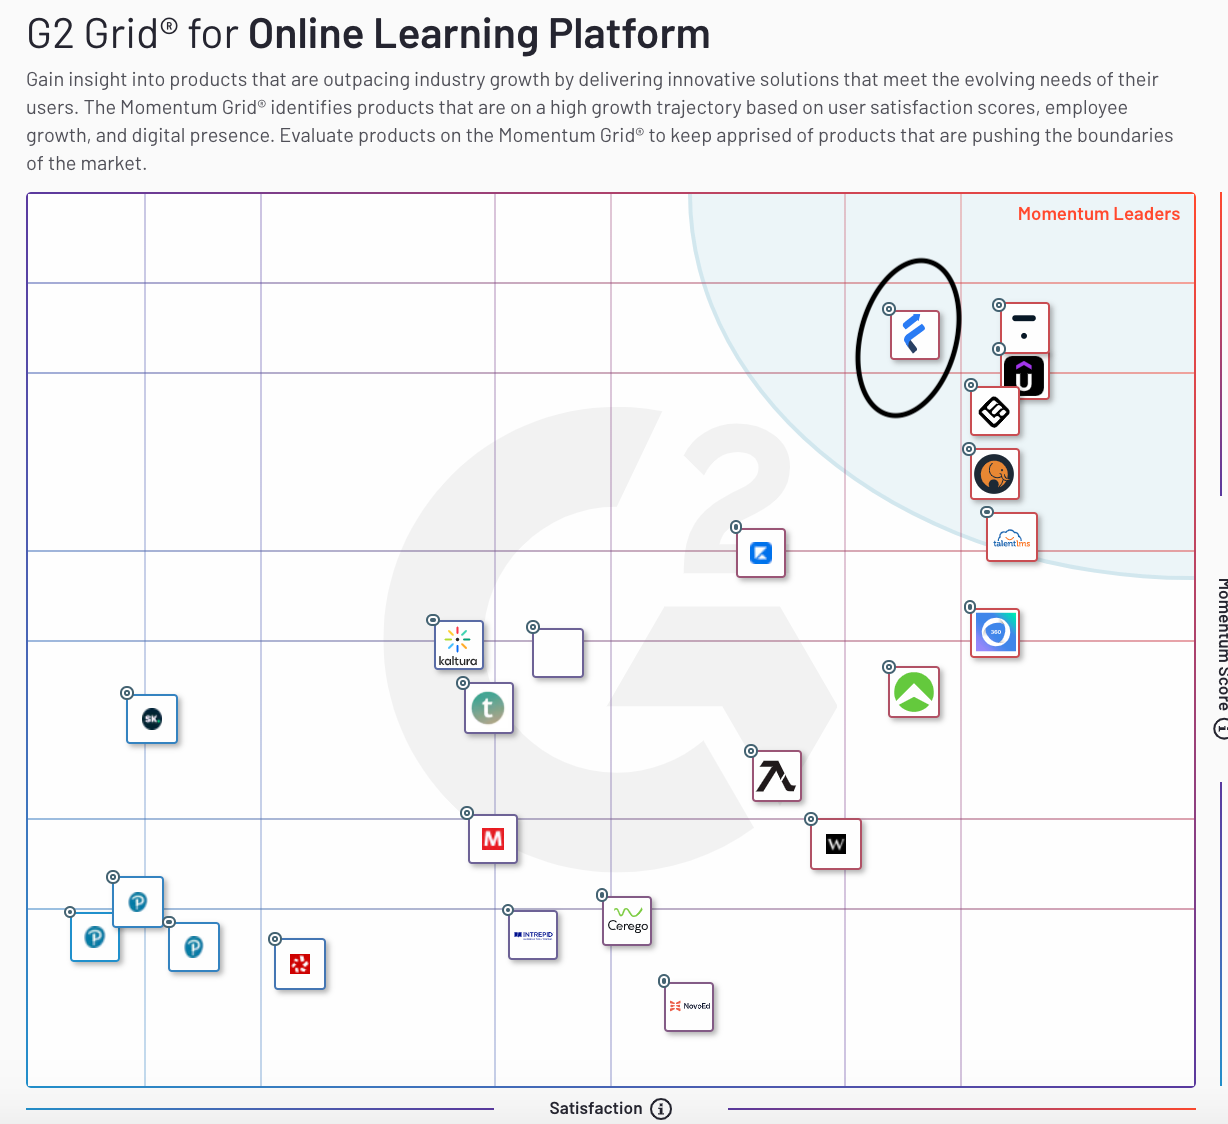 G2 Online Learning Platform